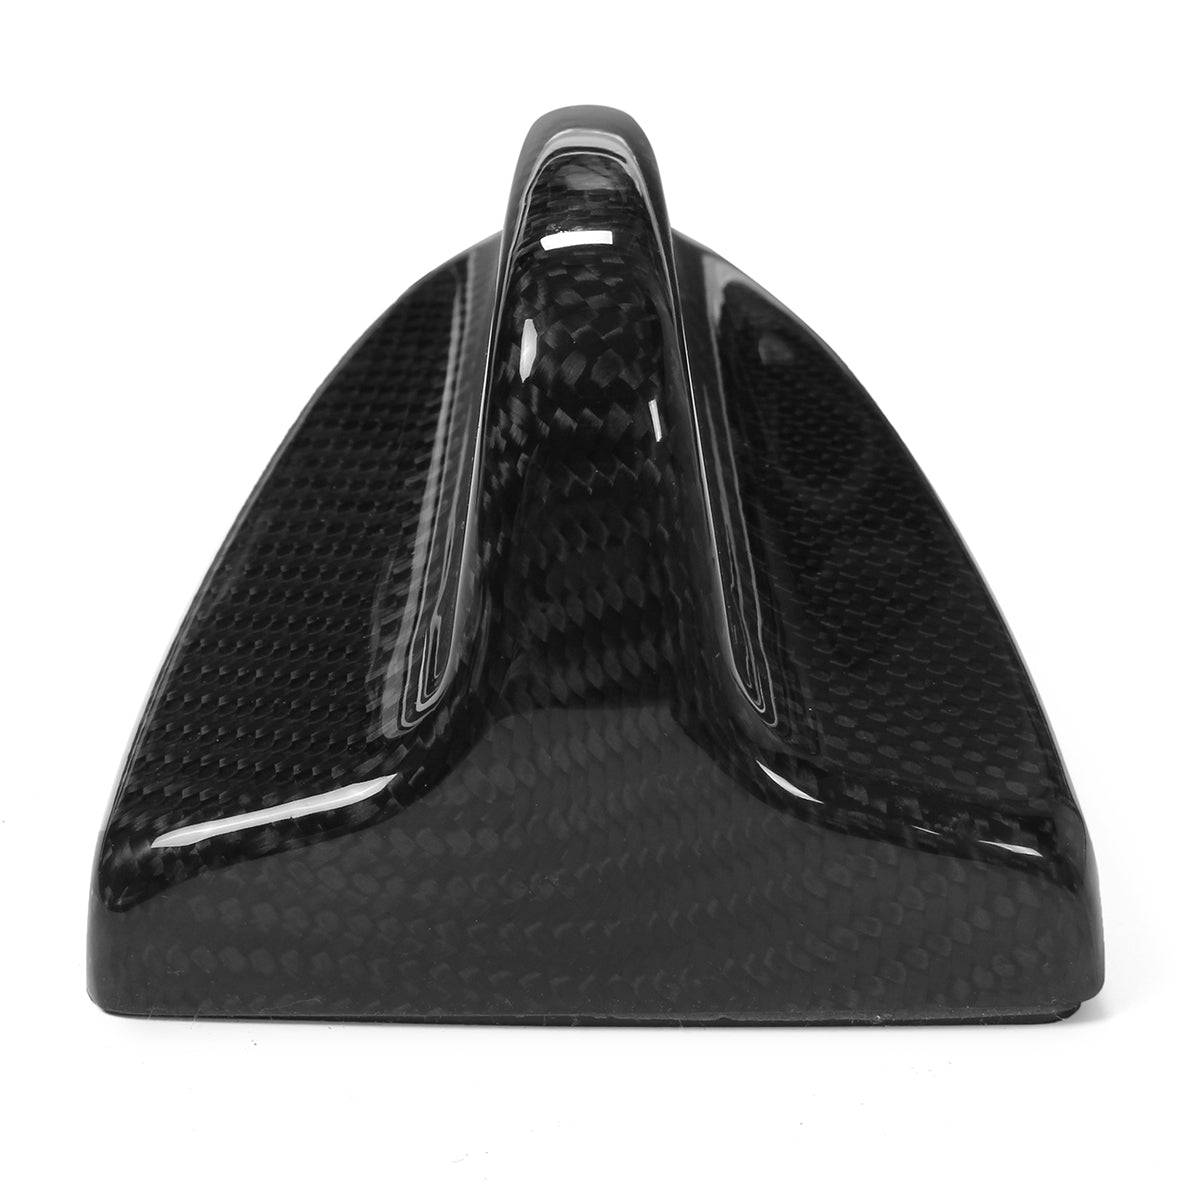 Black Carbon Fiber Car Antenna Cap Cover Add-on for BMW 3 Series E46 M3 E90 E92